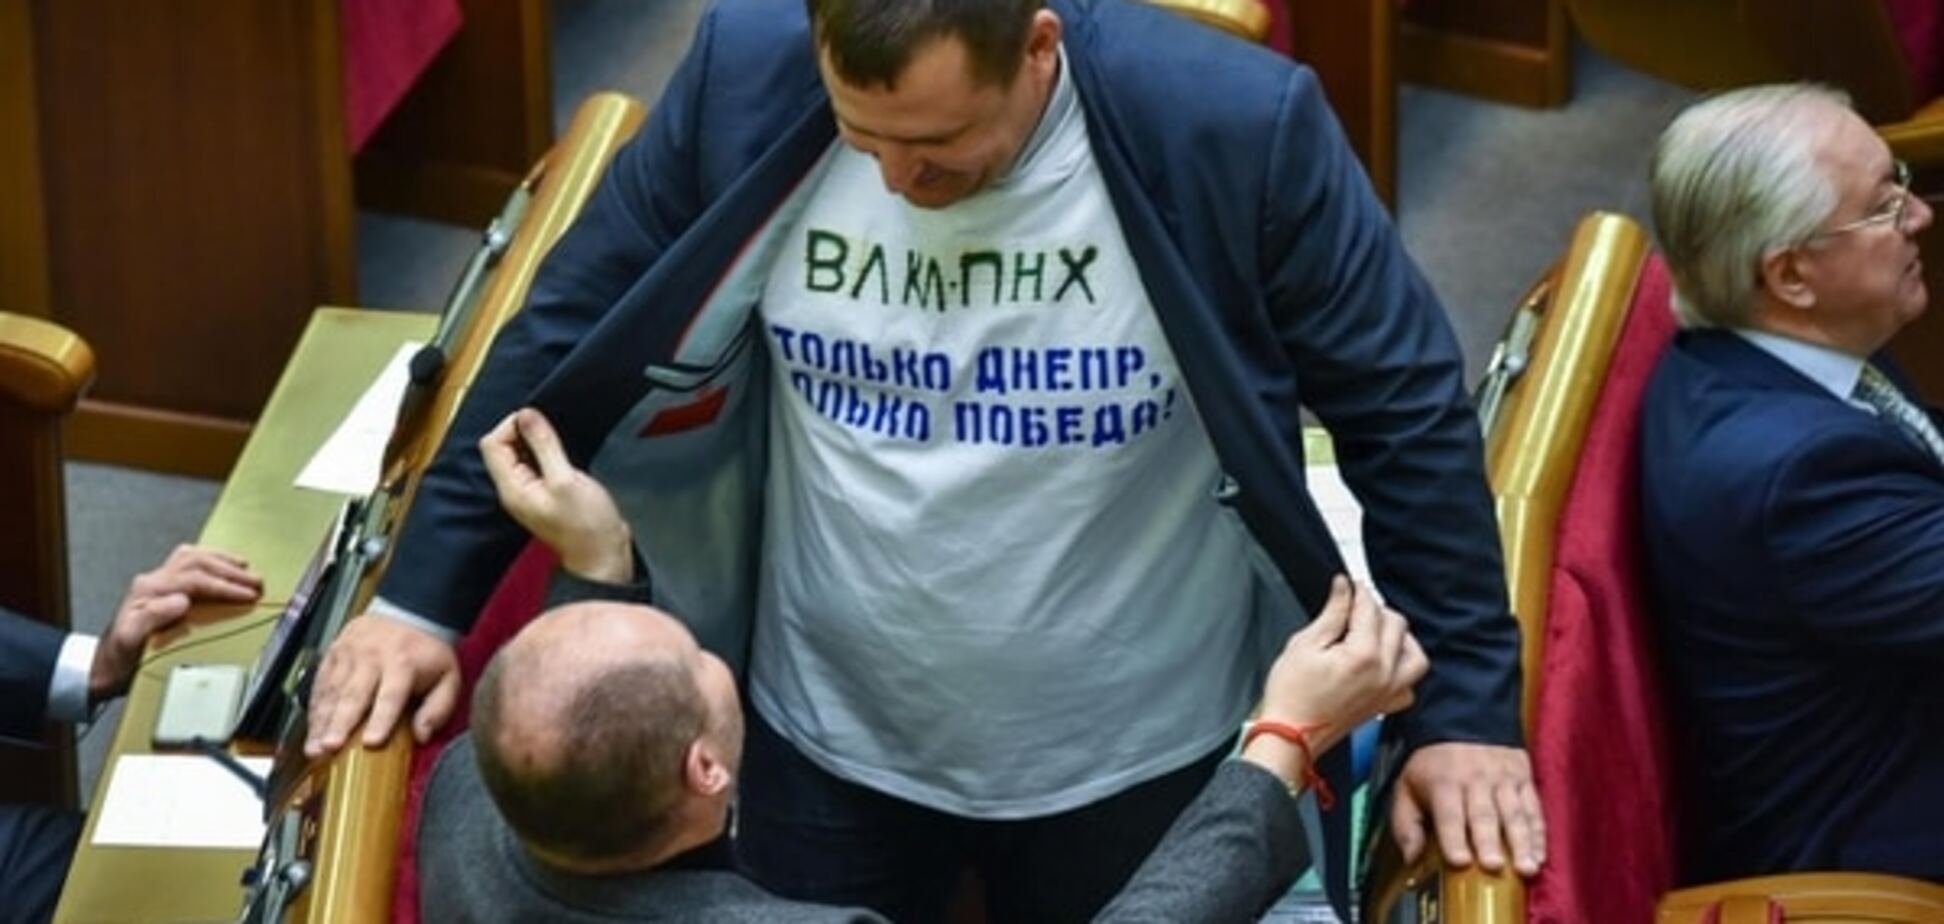 Филатов пришел в Раду в футболке 'ВЛКЛ ПНХ': фотофакт